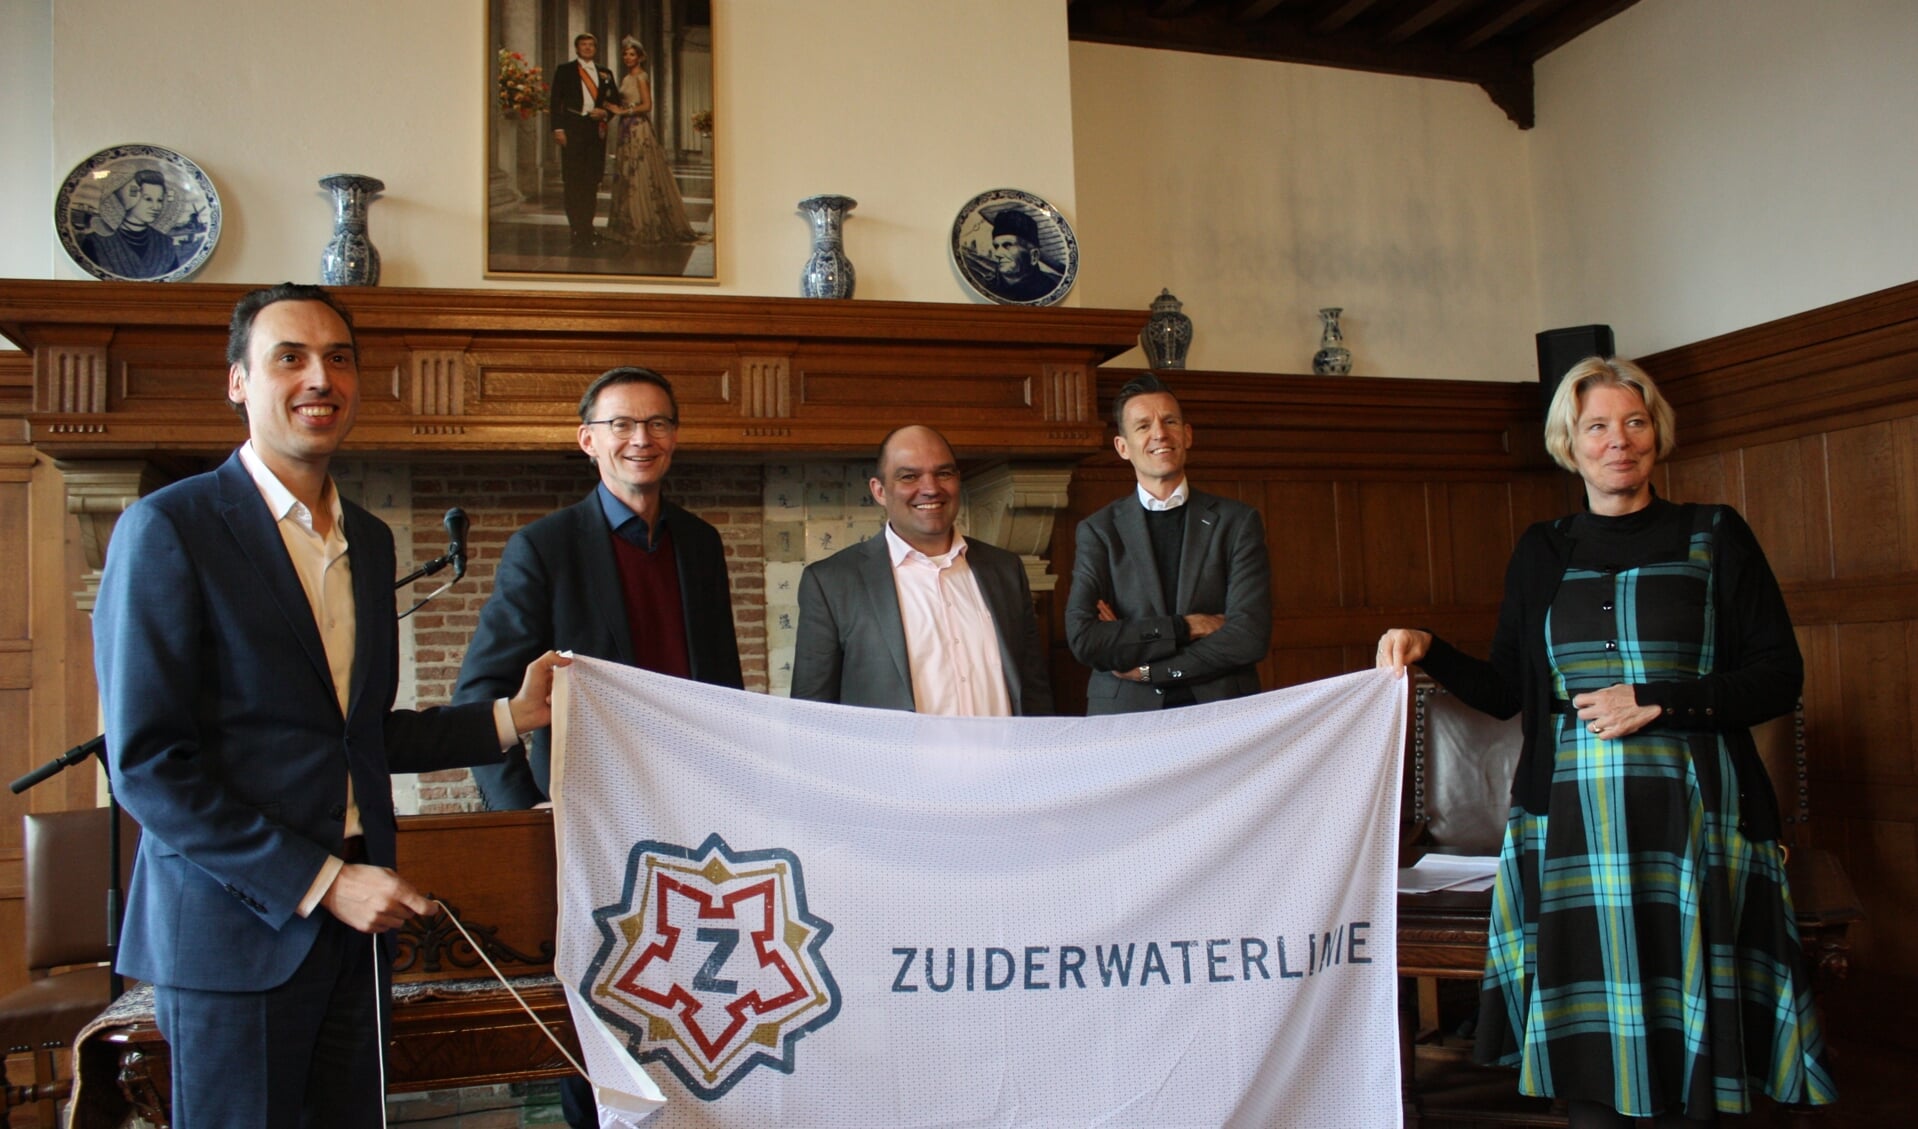 Gedeputeerde Smeulders, wethouder Van Waveren, wethouder Dingemans (gemeente Moerdijk), wethouder Markwat en gedeputeerde De Zoete met de Zuiderwaterlinie-vlag (Foto: Kees van Rixoort).